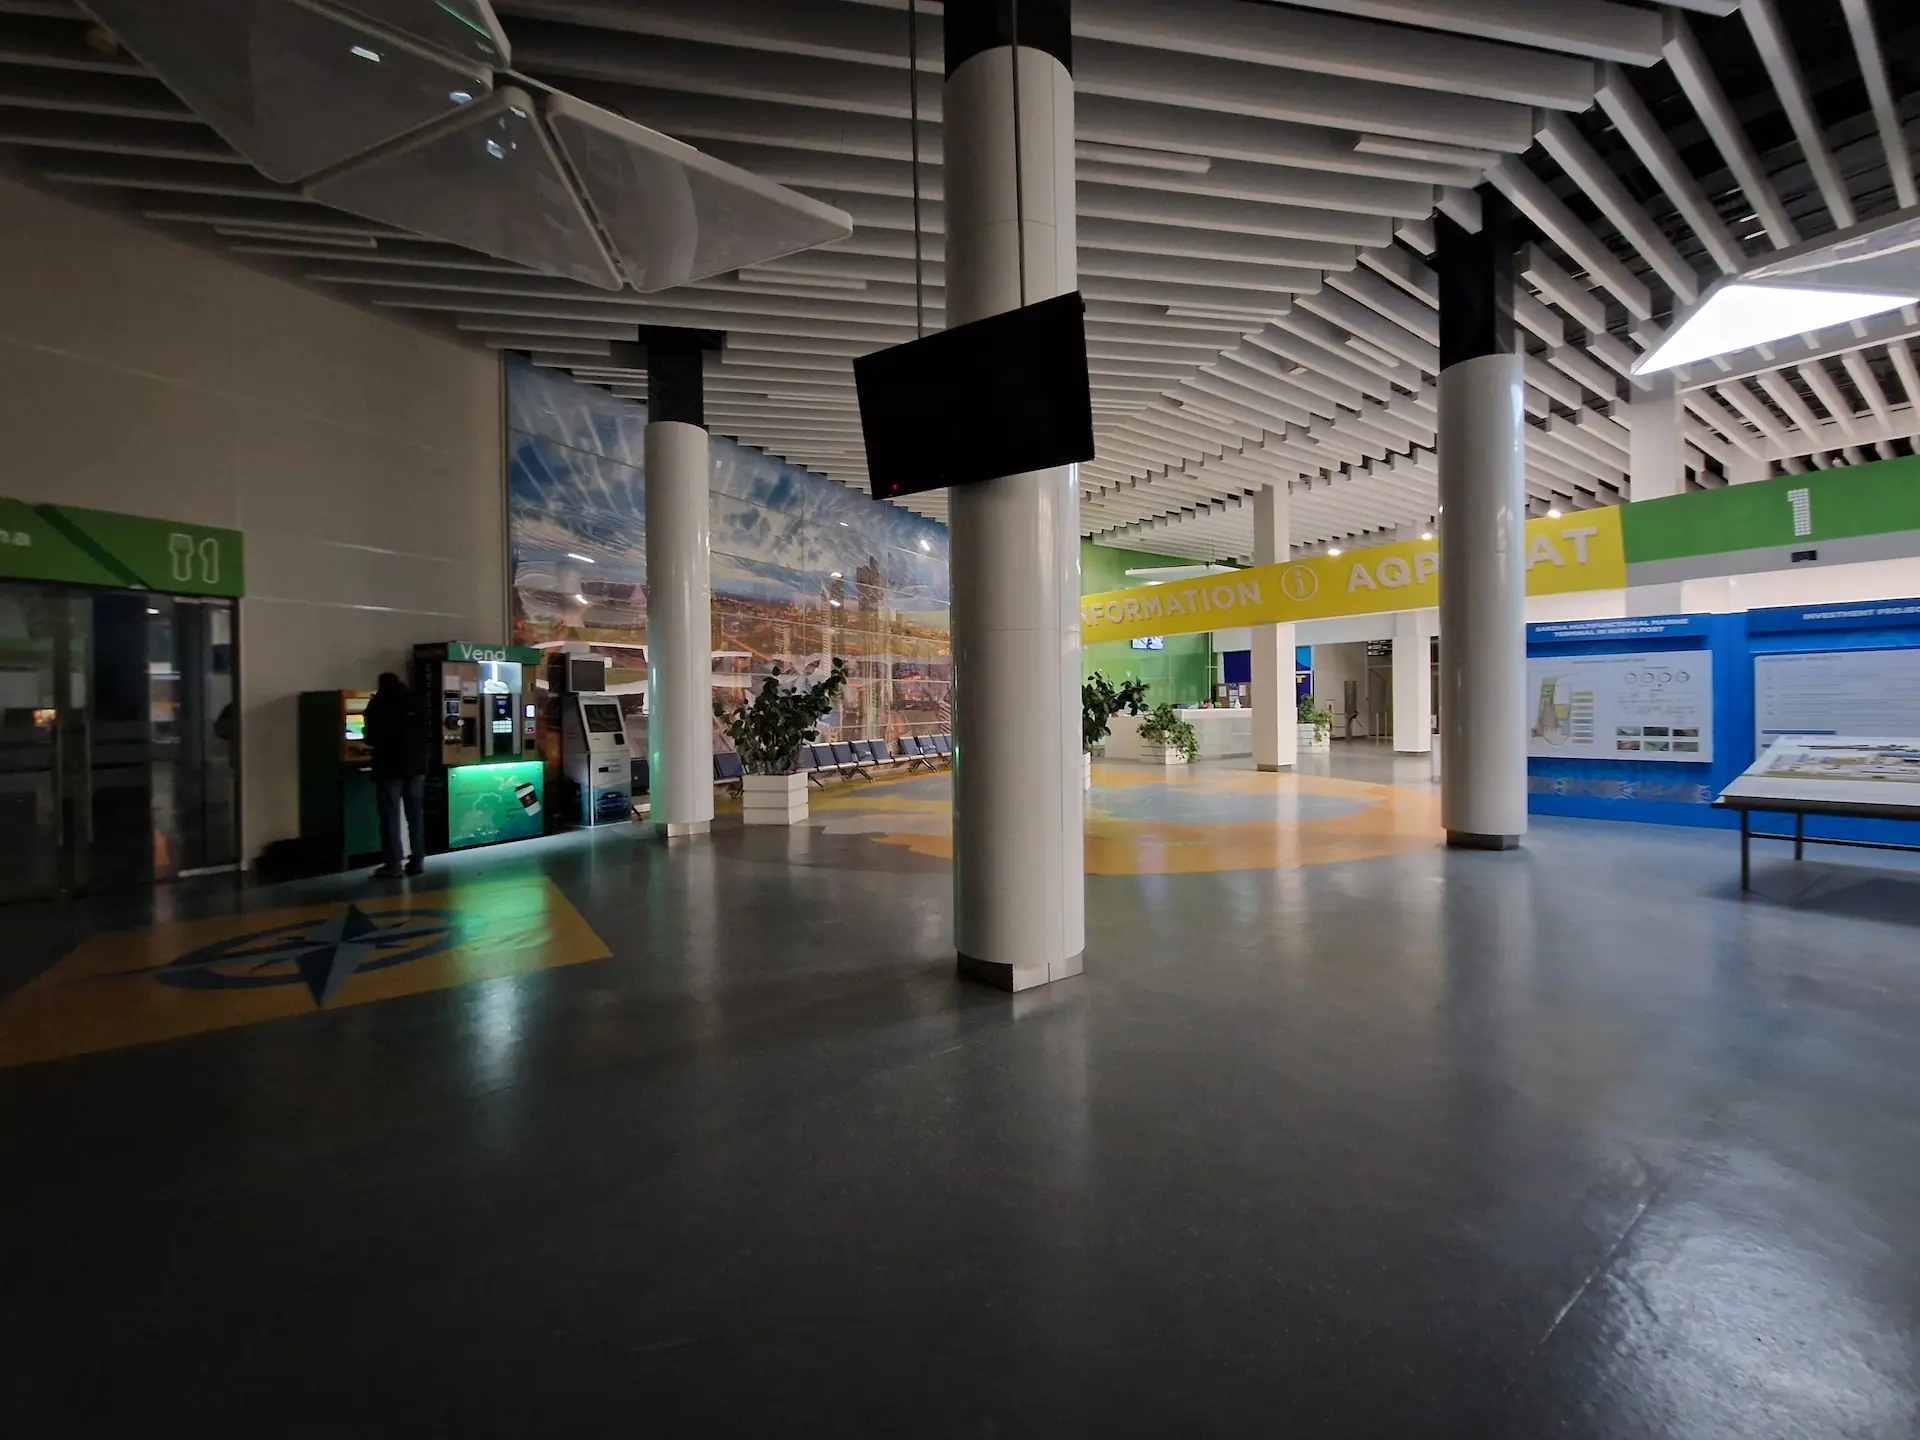 Le centre d'information est un grand hall vide à demi dans la pénombre. On voit des bancomats et machines à café illuminés.